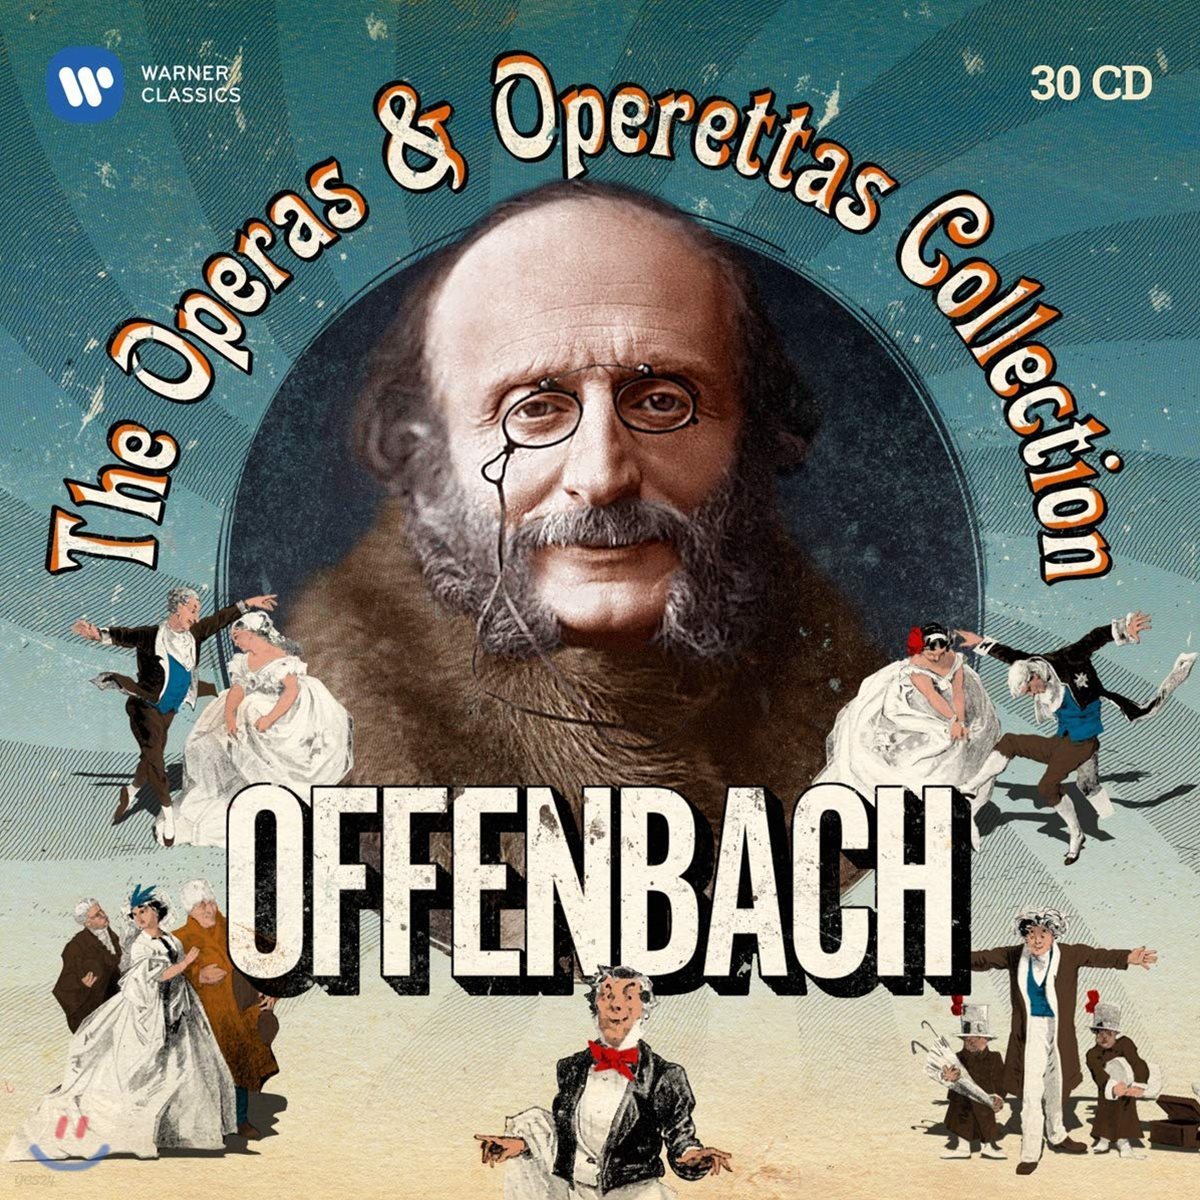 오펜바흐 탄생 200주년 기념 오페라, 오페레타 박스 (Offenbach: The Operas and Operettas Collection)